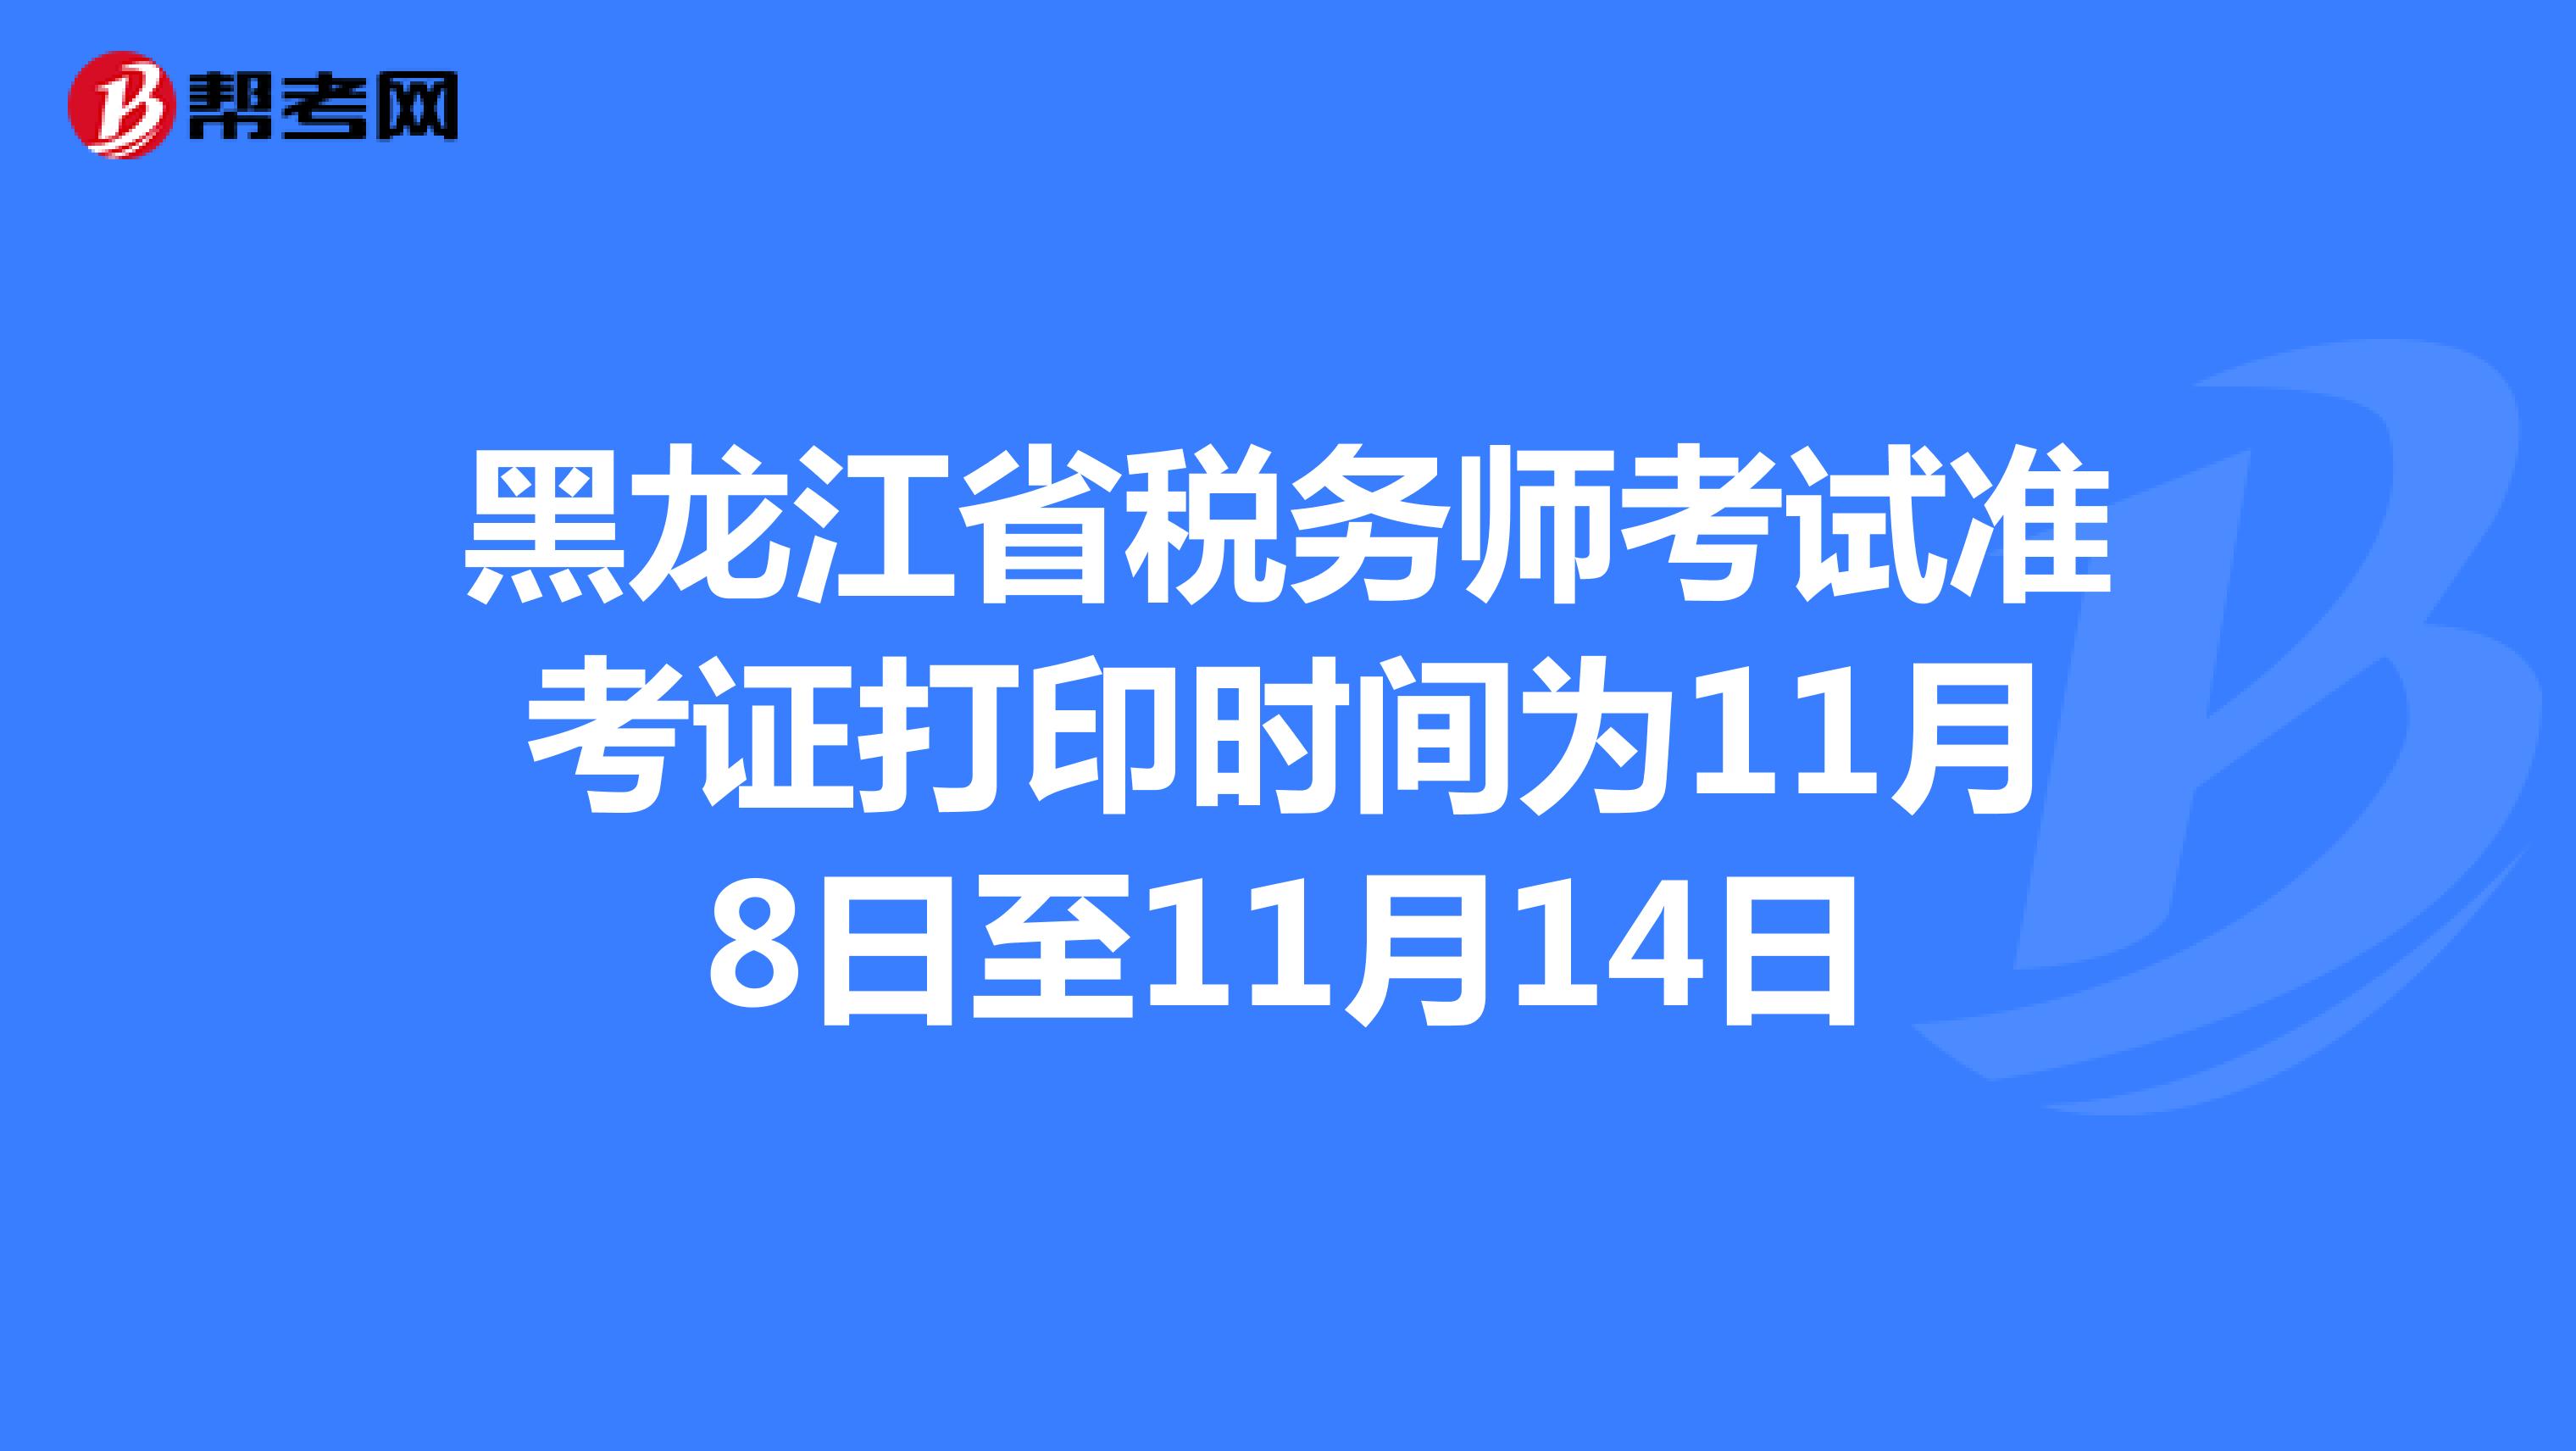 黑龙江省税务师考试准考证打印时间为11月8日至11月14日